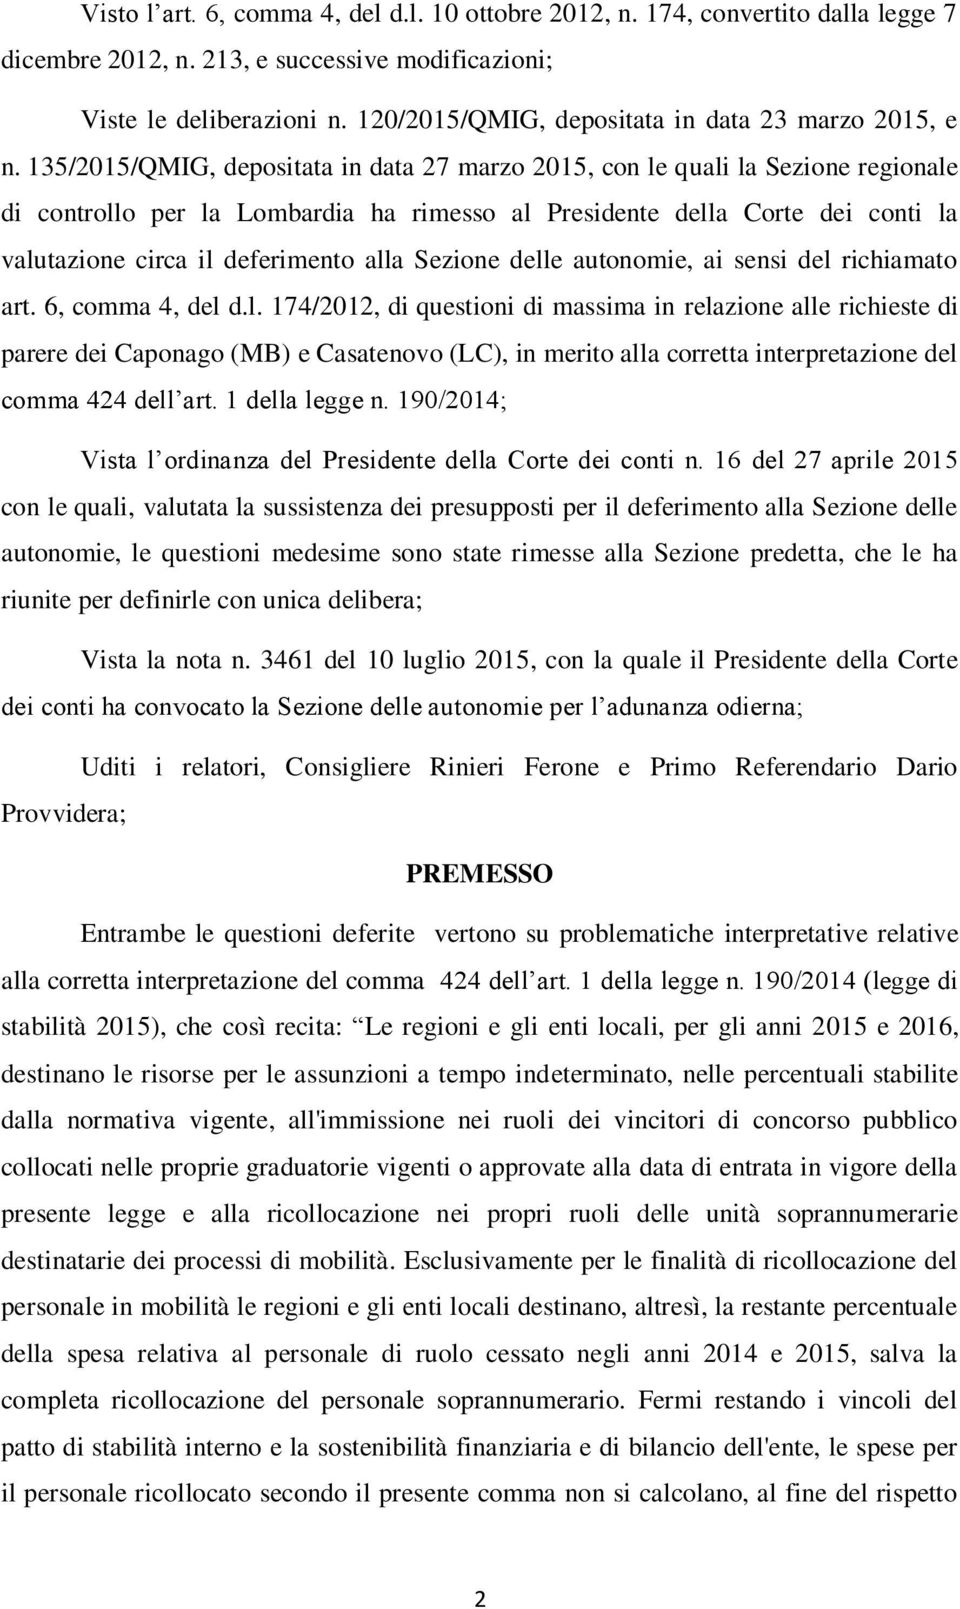 135/2015/QMIG, depositata in data 27 marzo 2015, con le quali la Sezione regionale di controllo per la Lombardia ha rimesso al Presidente della Corte dei conti la valutazione circa il deferimento